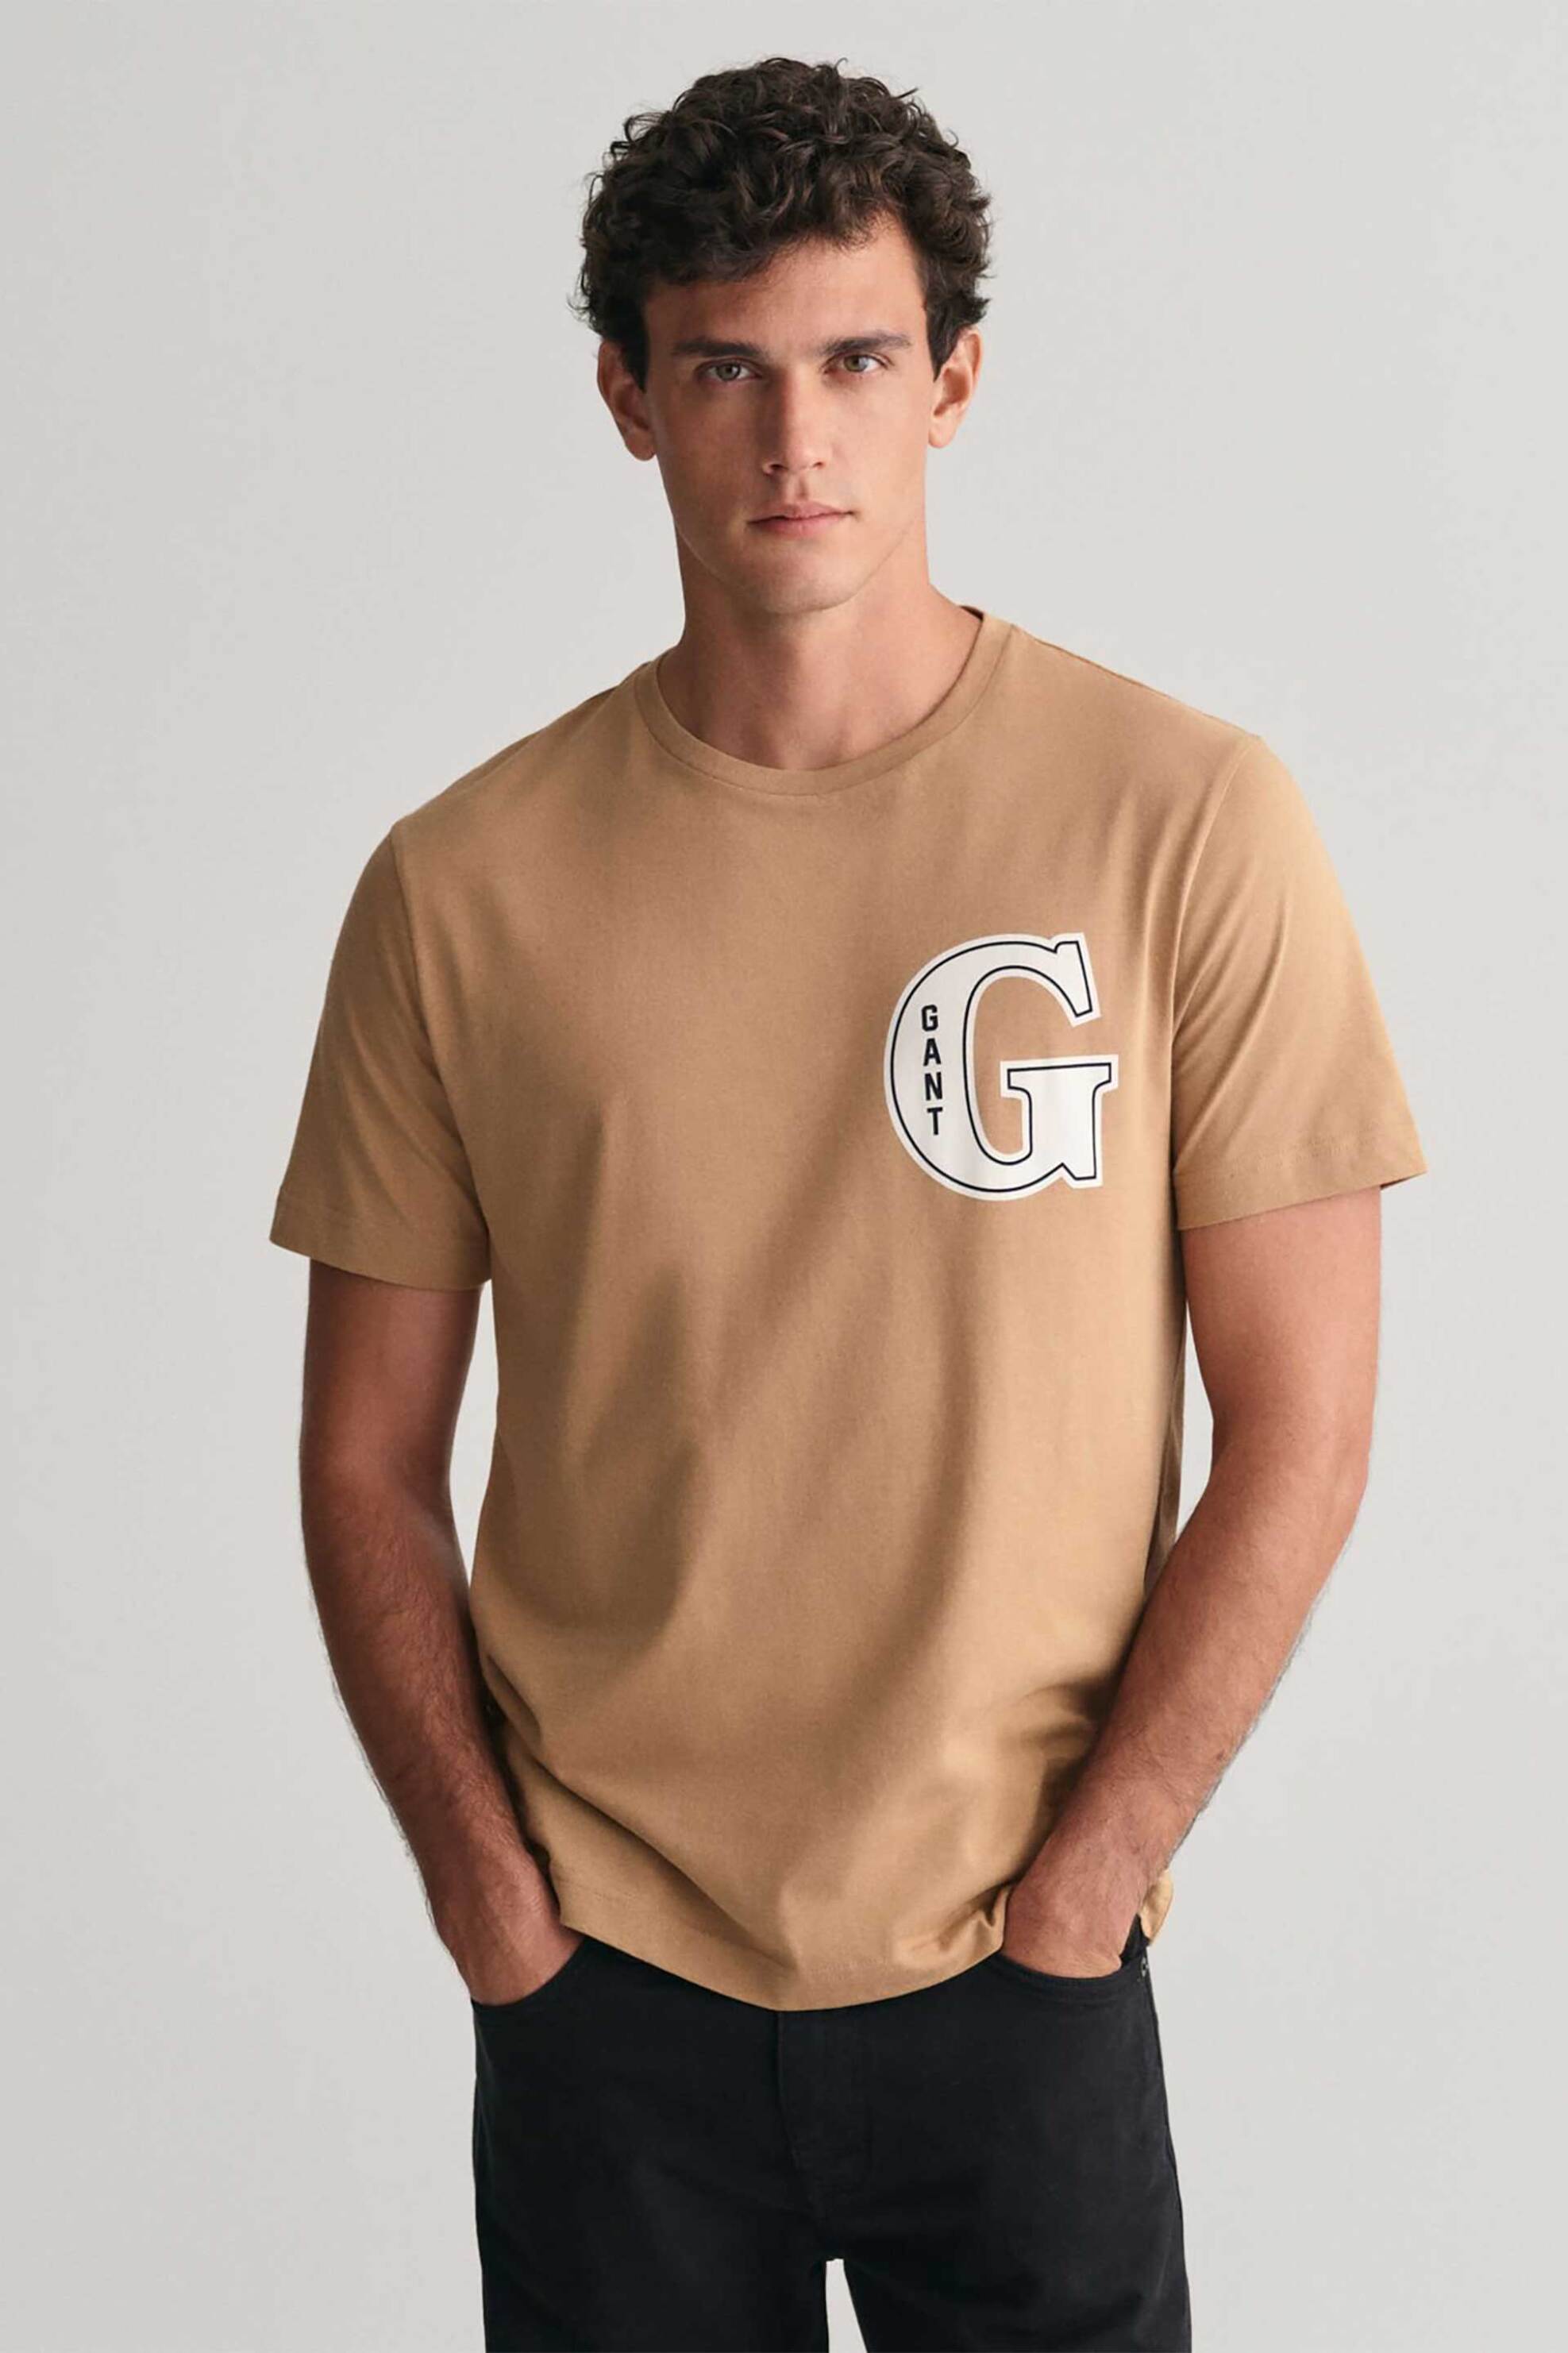 Ανδρική Μόδα > Ανδρικά Ρούχα > Ανδρικές Μπλούζες > Ανδρικά T-Shirts Gant ανδρικό T-shirt με G graphic logo print Regular Fit - 2003224 Καμηλό